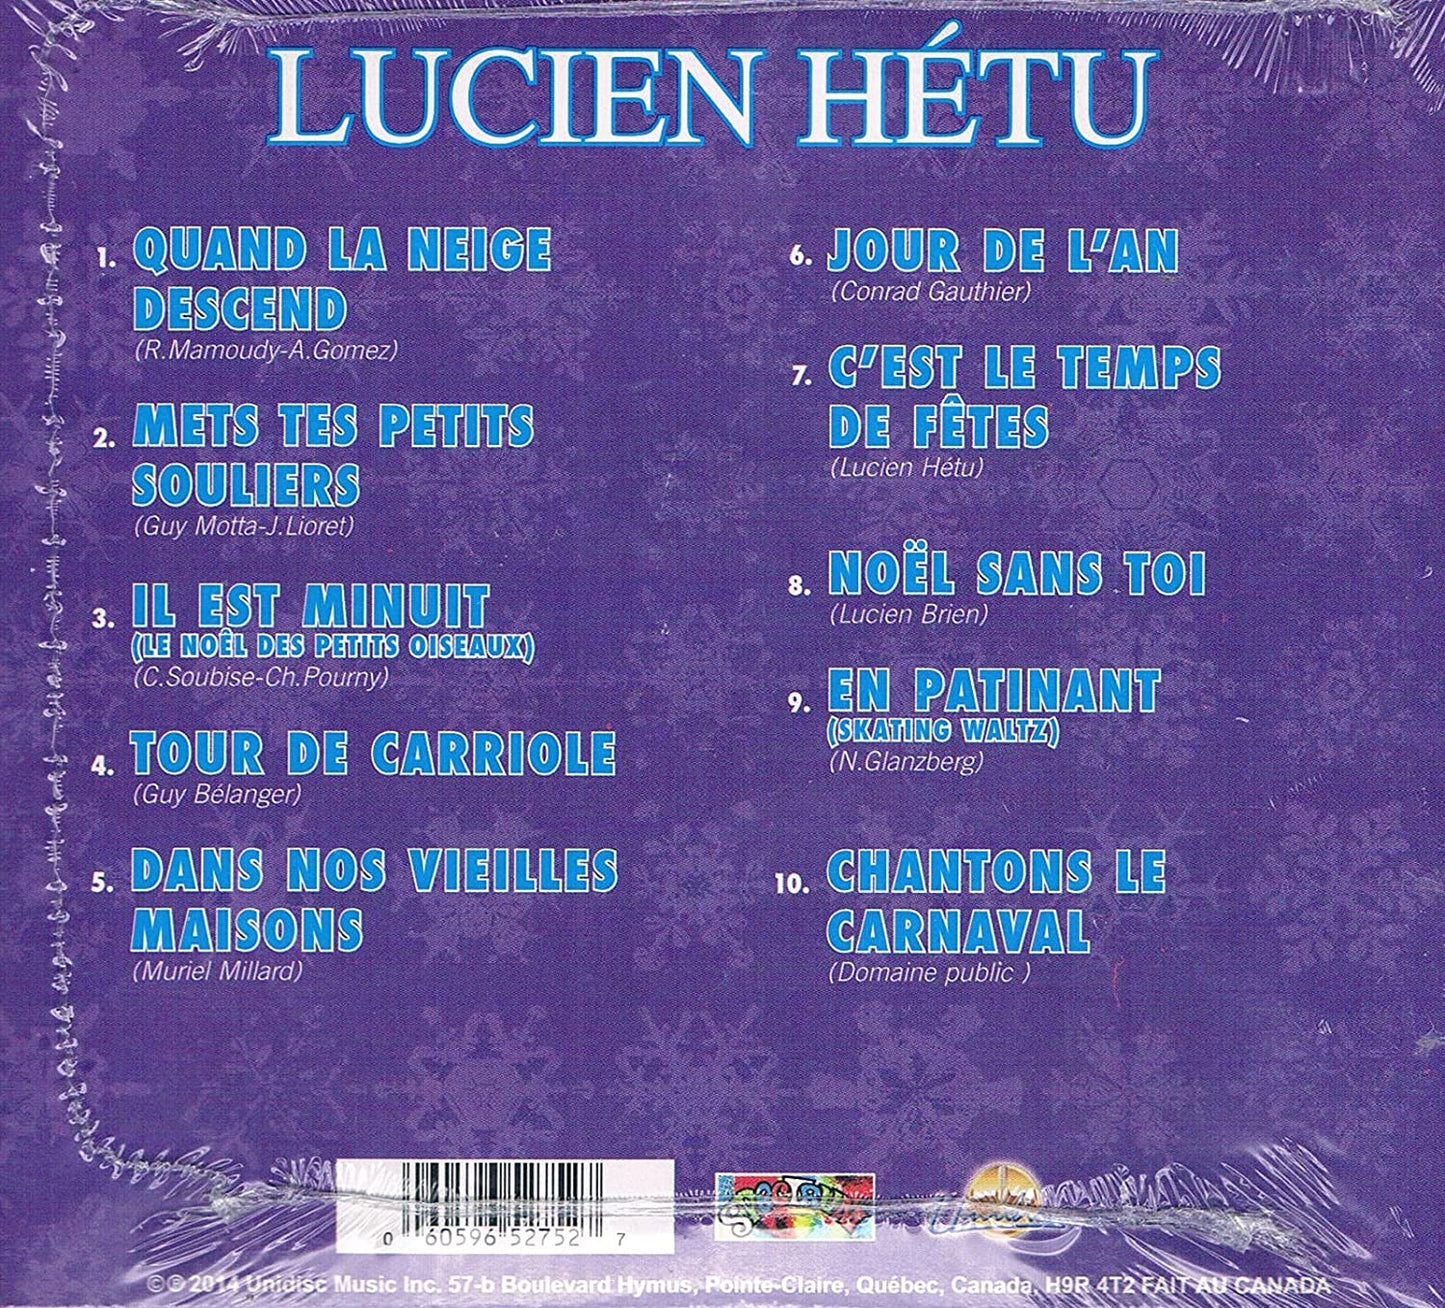 Quand La Niege Descend [Audio CD] Lucien Hetu